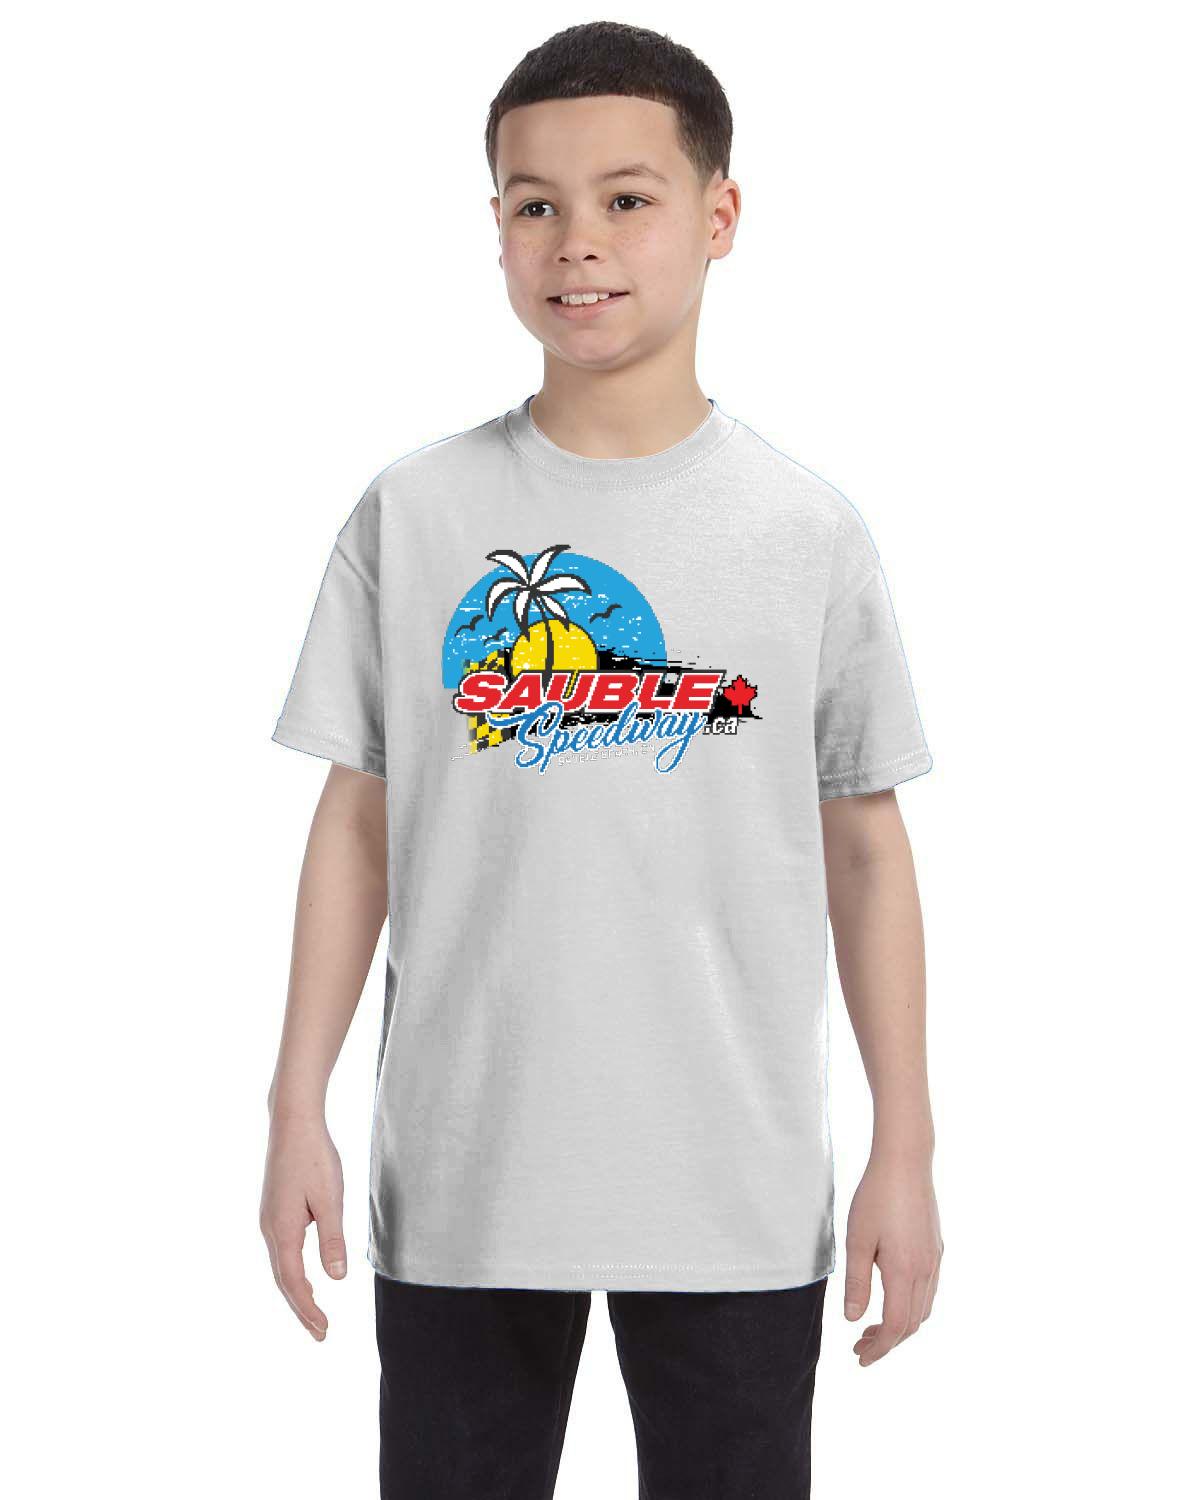 Sauble Speedway Kid's T-Shirt